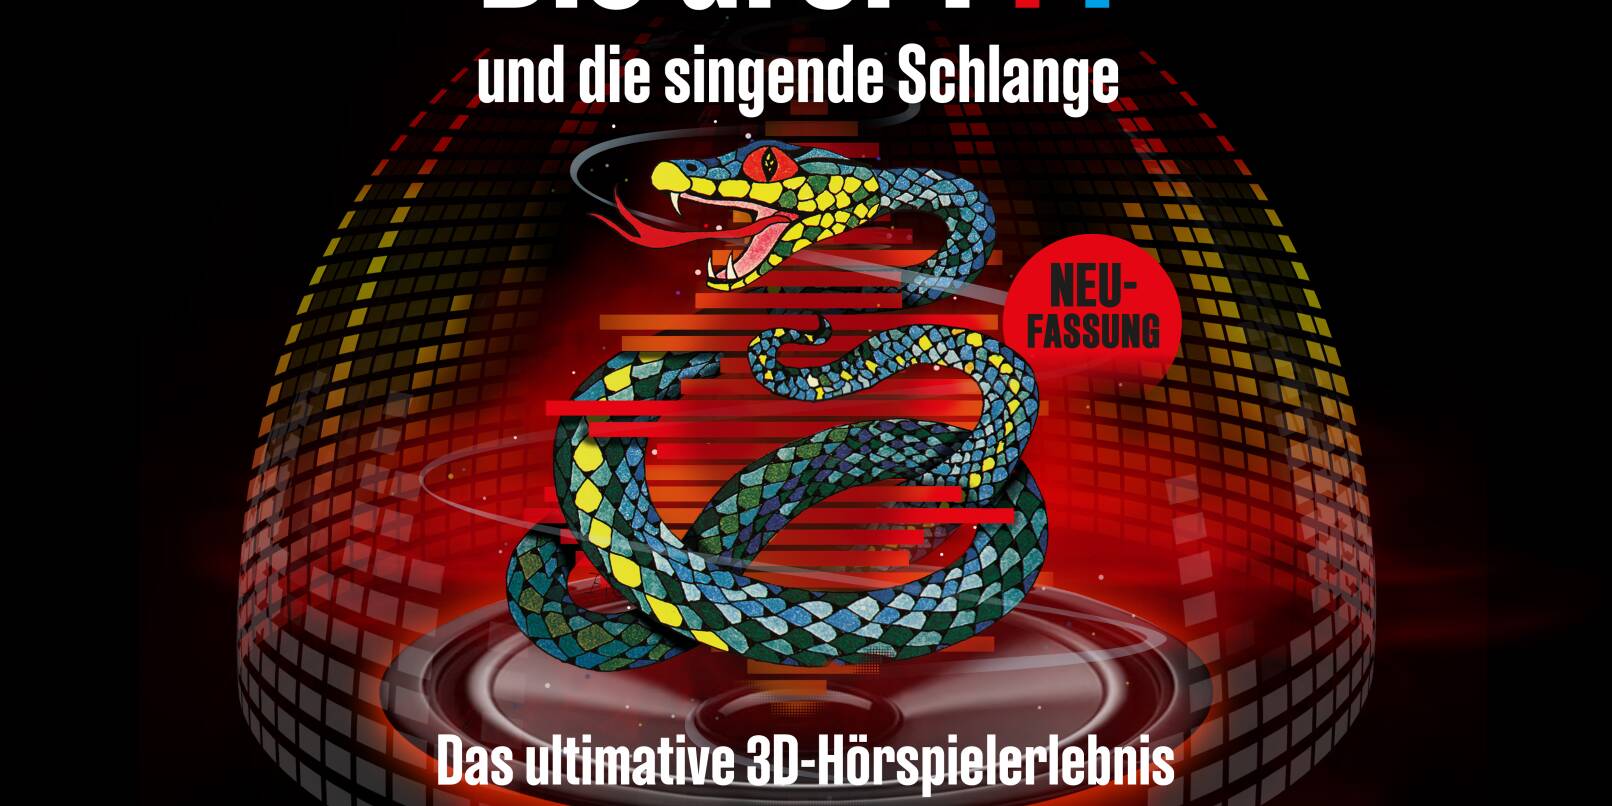 Die drei ??? und die singende Schlange heißt das Hörspielabenteuer, das man am Samstag, 4. November, im Planetarium Mannheim erleben kann.